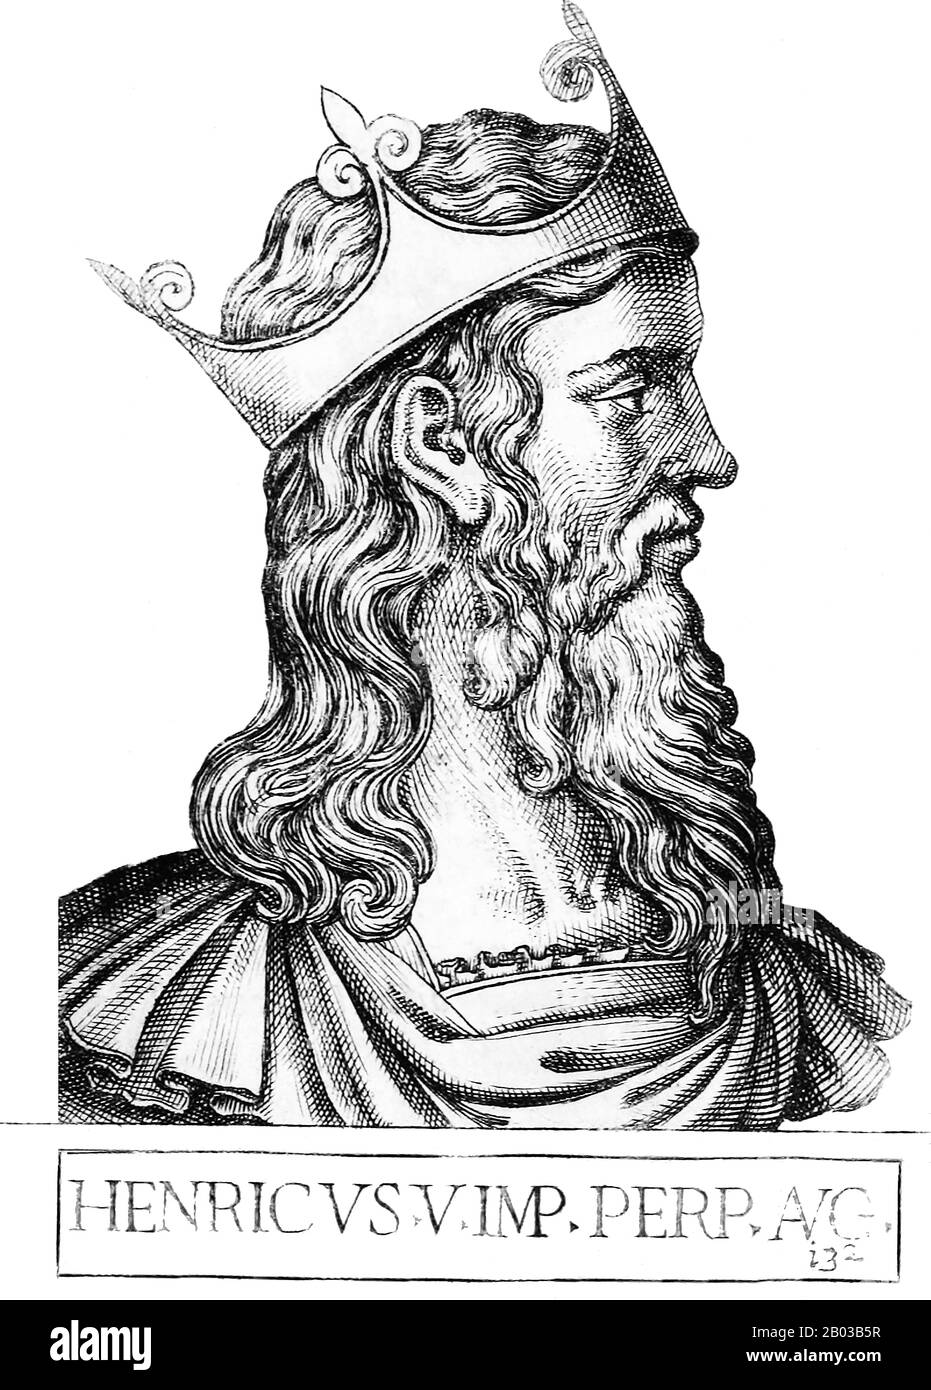 Heinrich V. (1081/1086-1125) war der Sohn von Kaiser Heinrich IV. Und wurde 1099 als Nachfolger seines älteren Bruders Conrad, der gegen ihren Vater rebelliert hatte, zum König von Deutschland und zu dessen wahrhaftem Nachfolger gekrönt. Henry legte während der Herrschaft seines Vaters einen Eid der Nichteinmischung in kaiserliche Angelegenheiten ab, aber er wurde von den Feinden seines Vaters 1104 zur Revolte überredet, was seinen Vater dazu zwang, 1105 abzudanken und Henry zum Alleinherrscher des Heiligen römischen Imperiums zu machen. Stockfoto